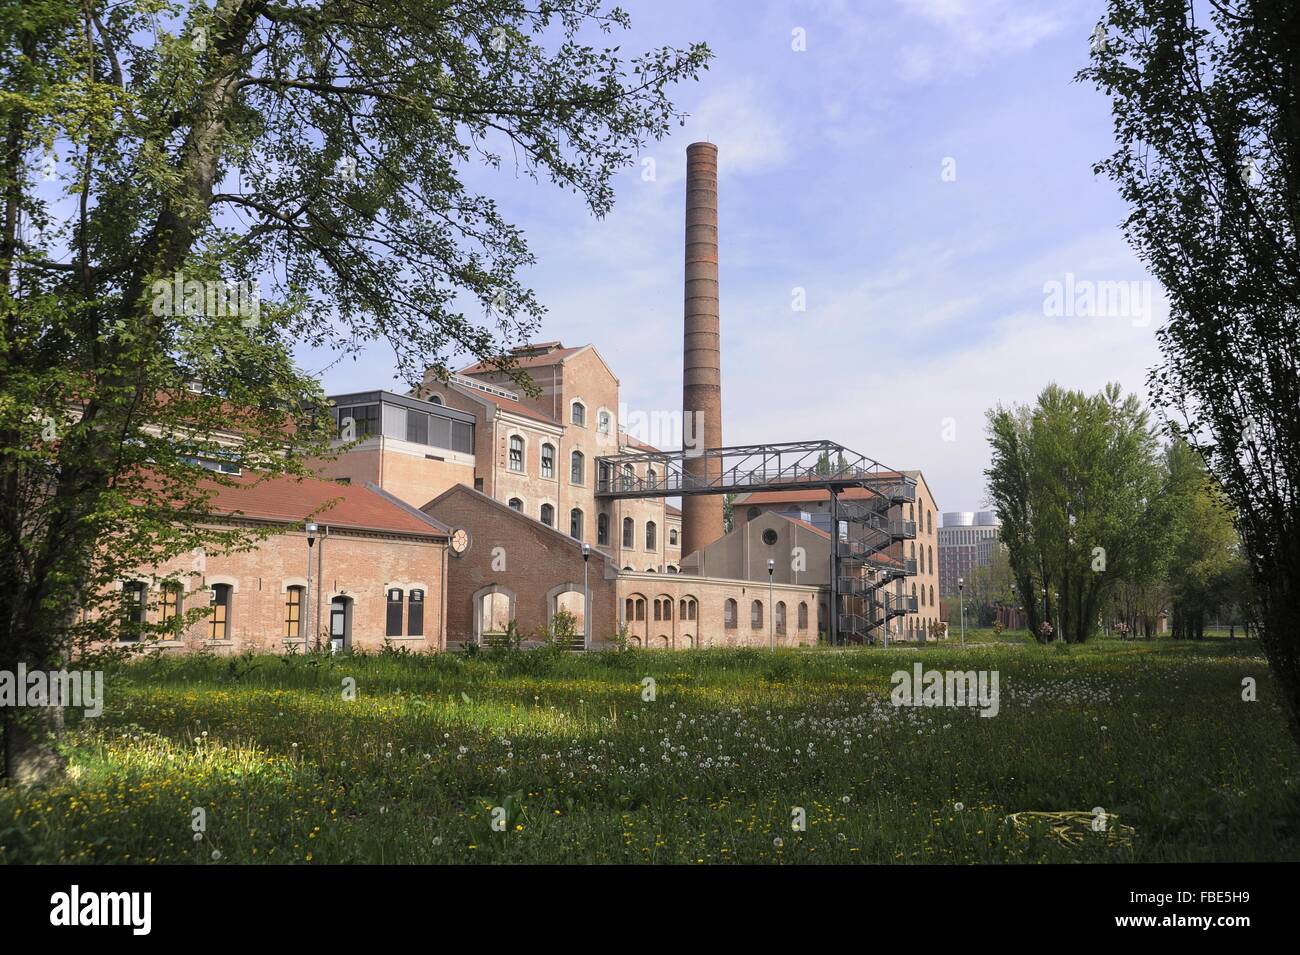 Université de Ferrara (Italie), site de la pôle scientifique et technologique dans le bâtiment industriel d'une ancienne fabrique de sucre Banque D'Images